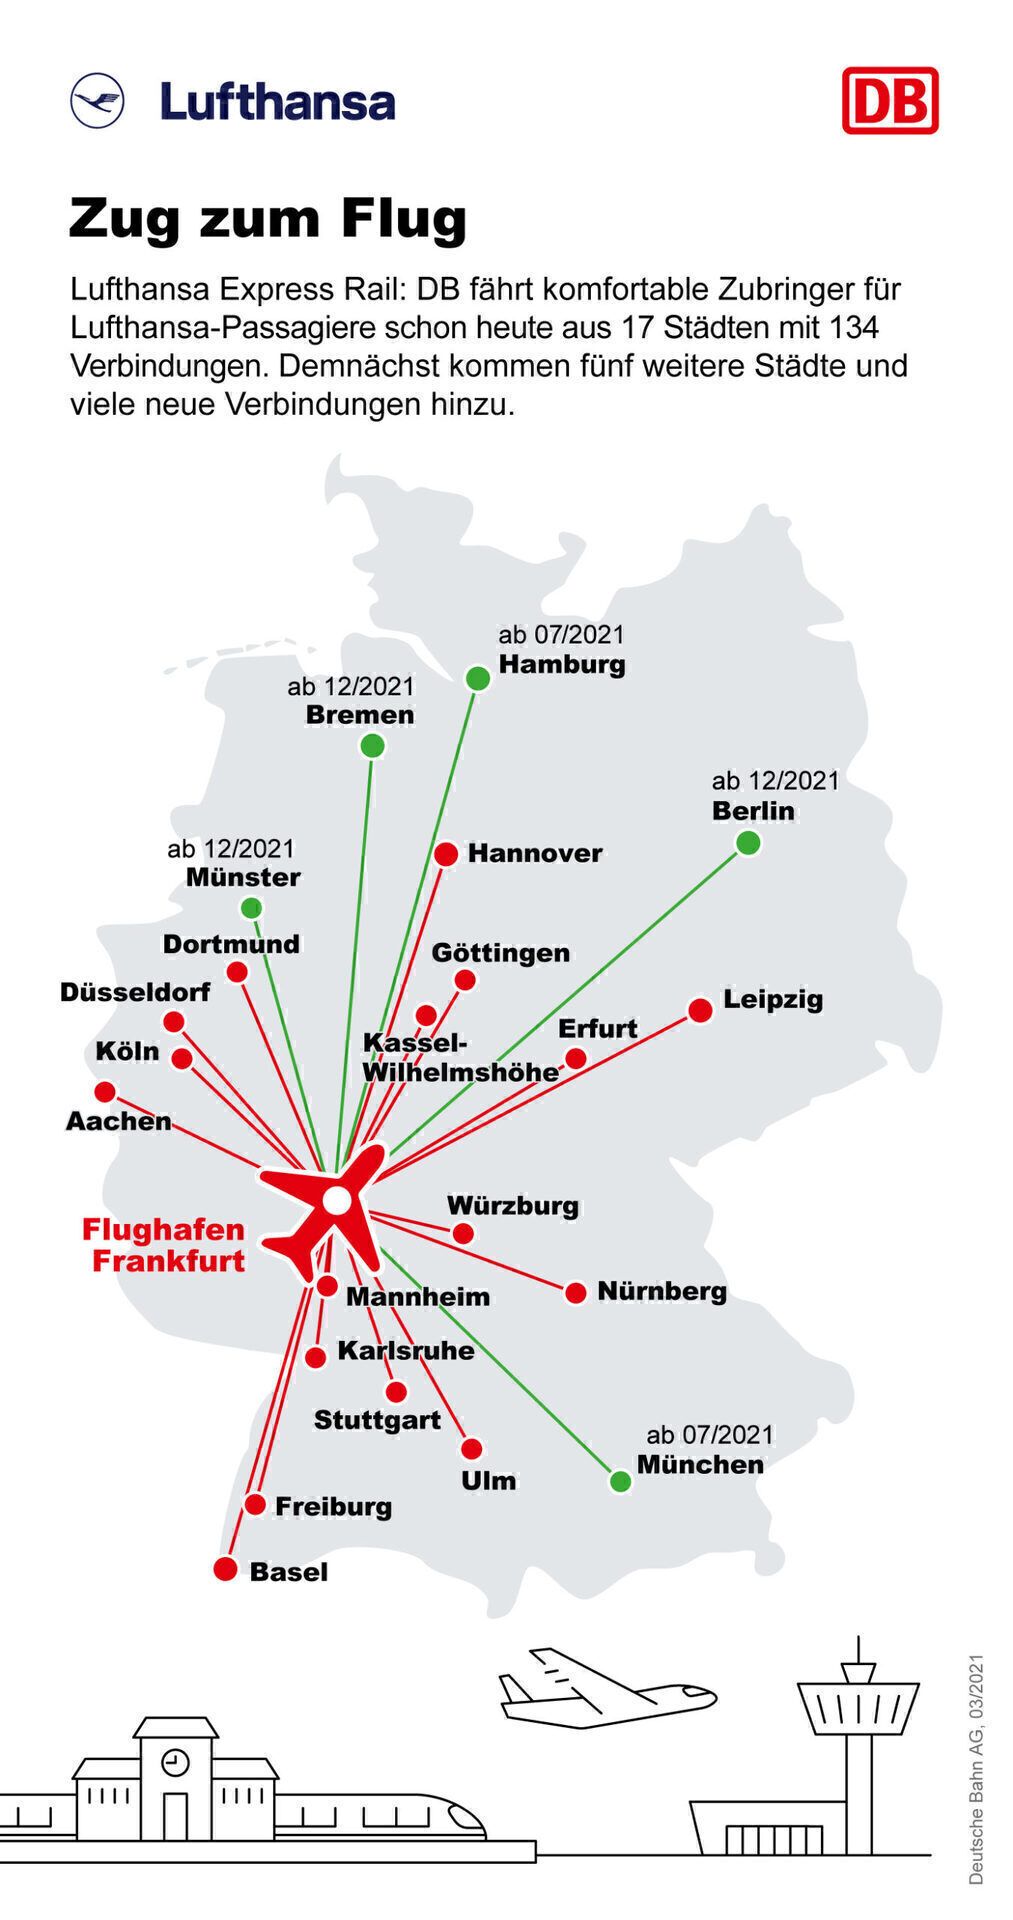 Lufthansa, Deutsche Bahn, Plane vs Train